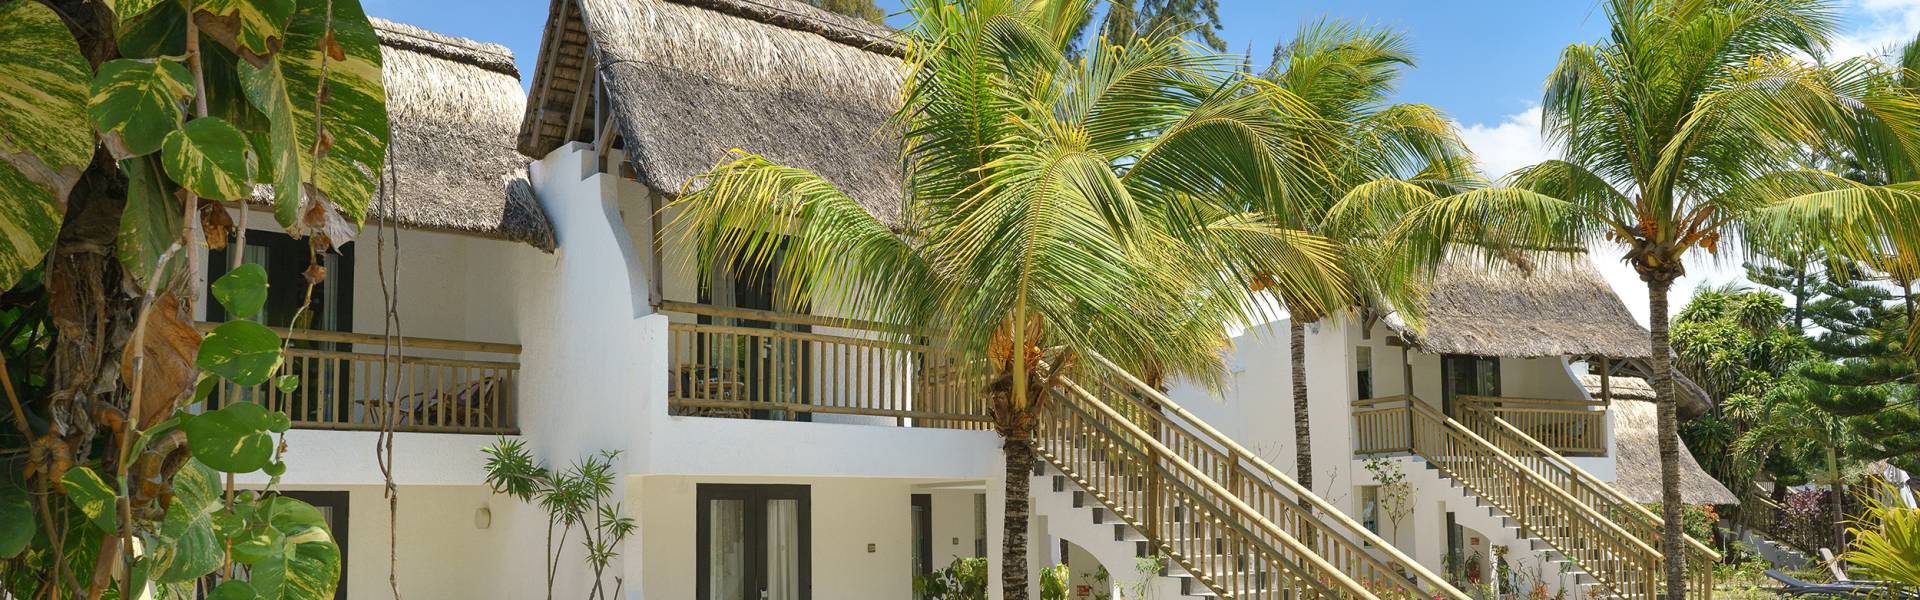 Combien coûte une nuit d'hôtel à l'île Maurice ? 